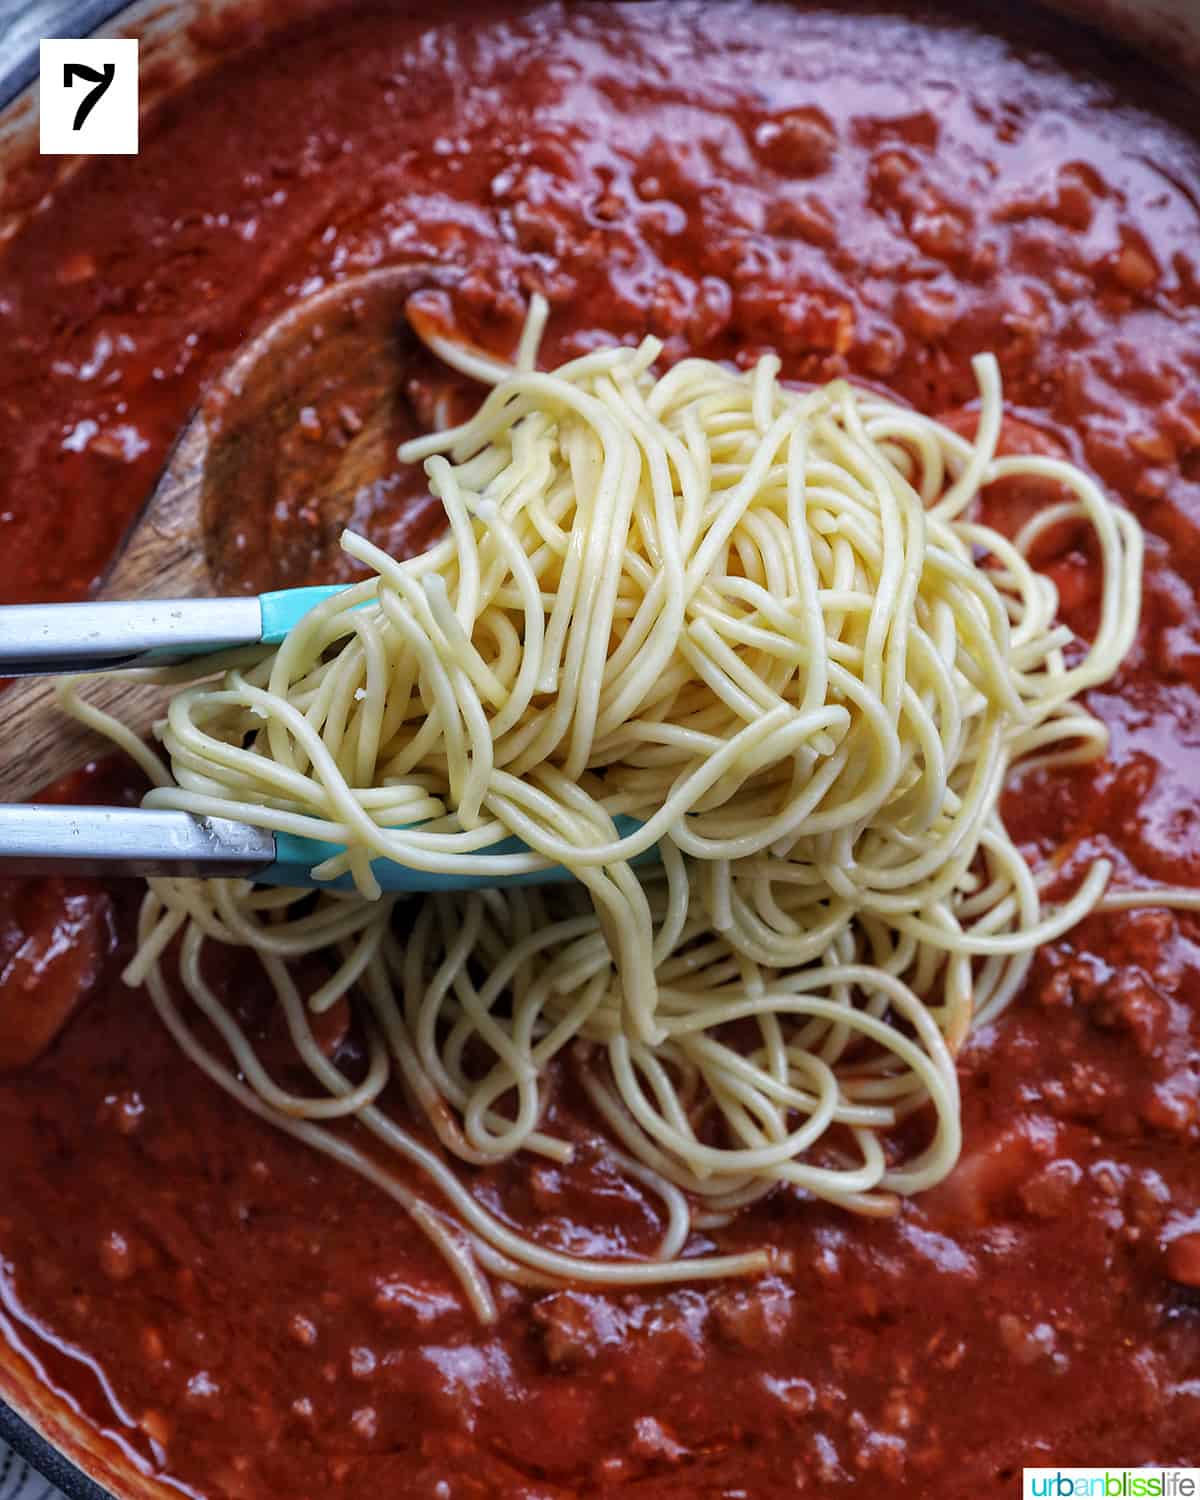 tongs adding spaghetti to Filipino spaghetti sauce in a pan.